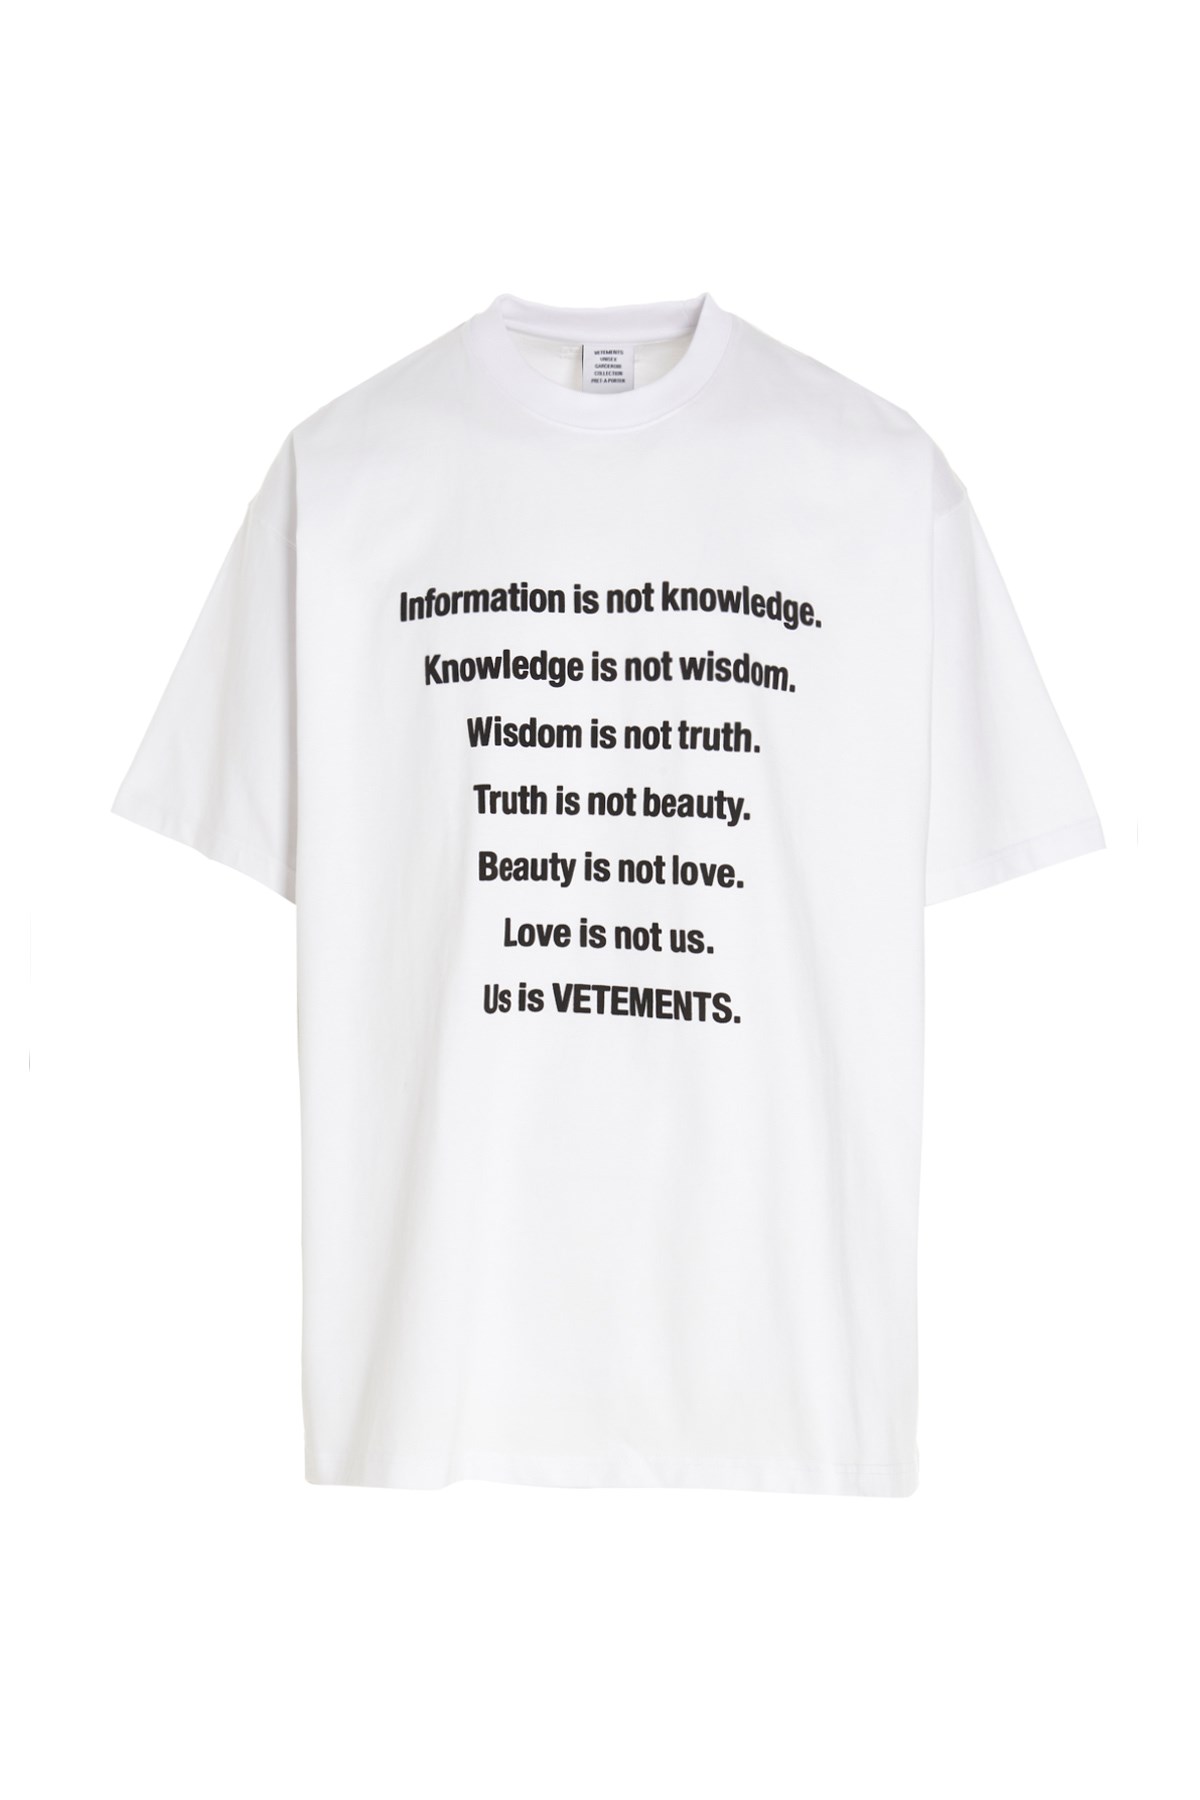 VETEMENTS T-Shirt 'Us Is Vetements'